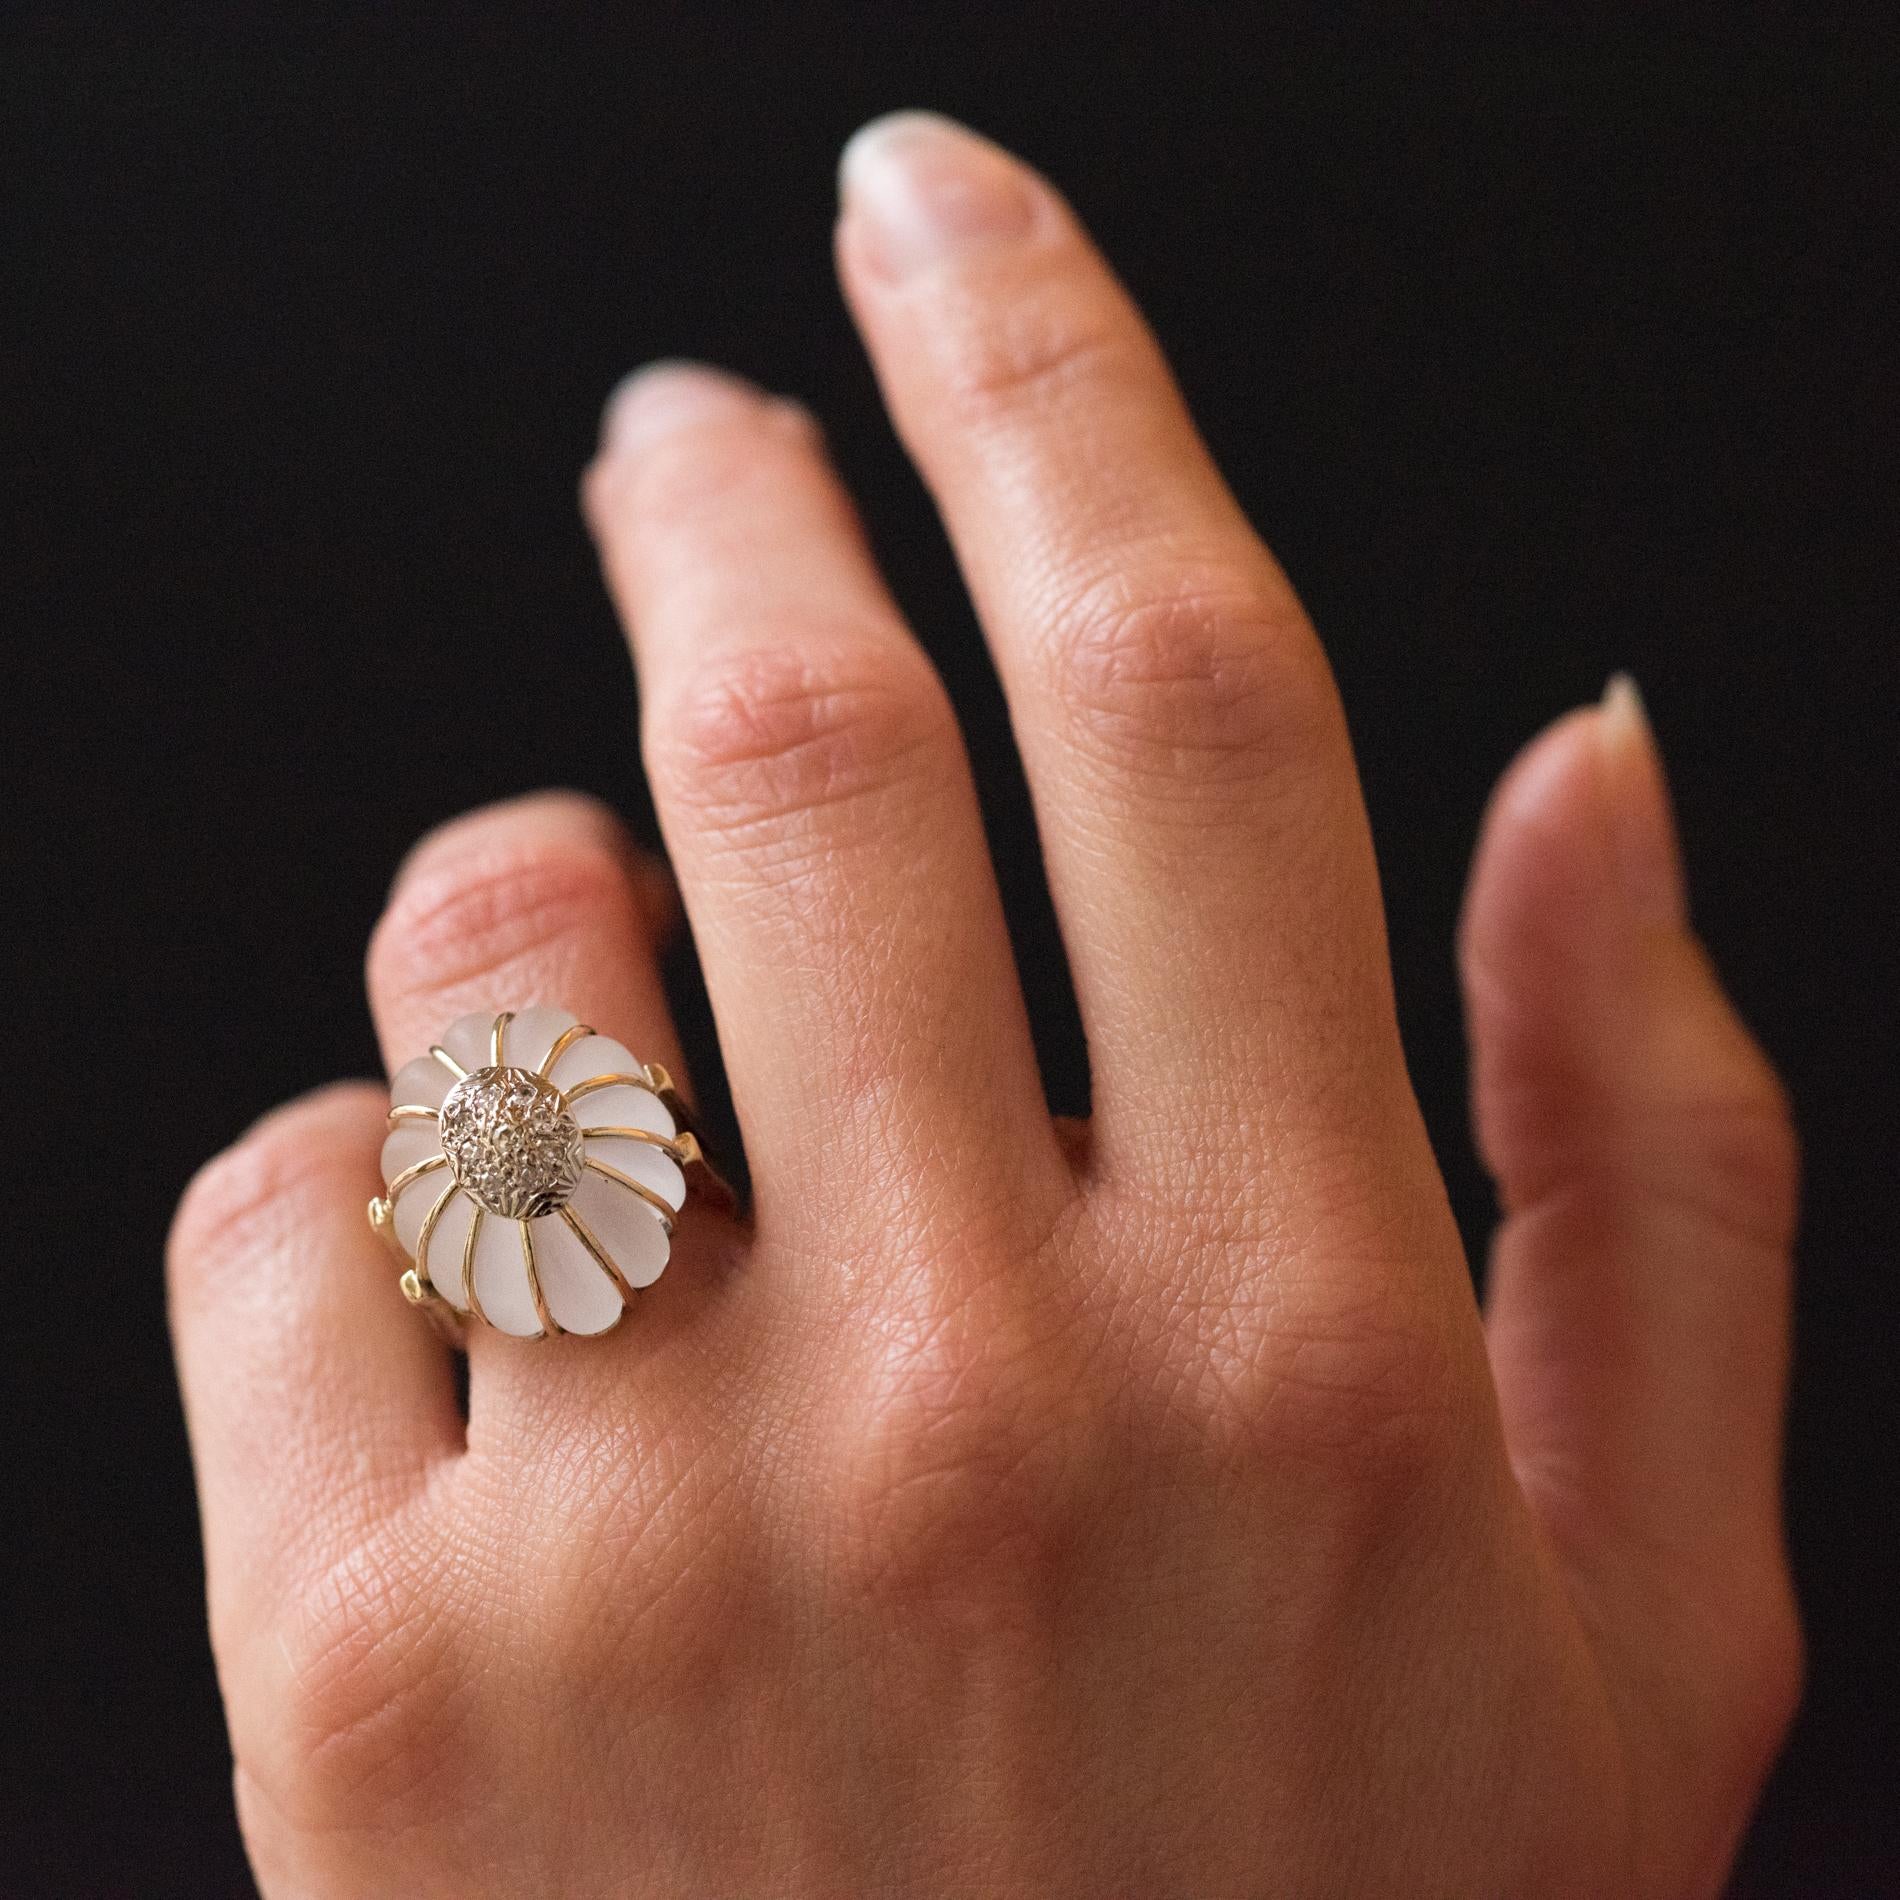 Ring aus 14 Karat Gelbgold.
Schöner Ring im Vintage-Stil. Er besteht aus einem matten Bergkristall, der in Form einer Blume geschliffen ist. Jedes Blütenblatt ist mit einem Goldfaden verziert und das Herz wird durch eine ovale Verzierung